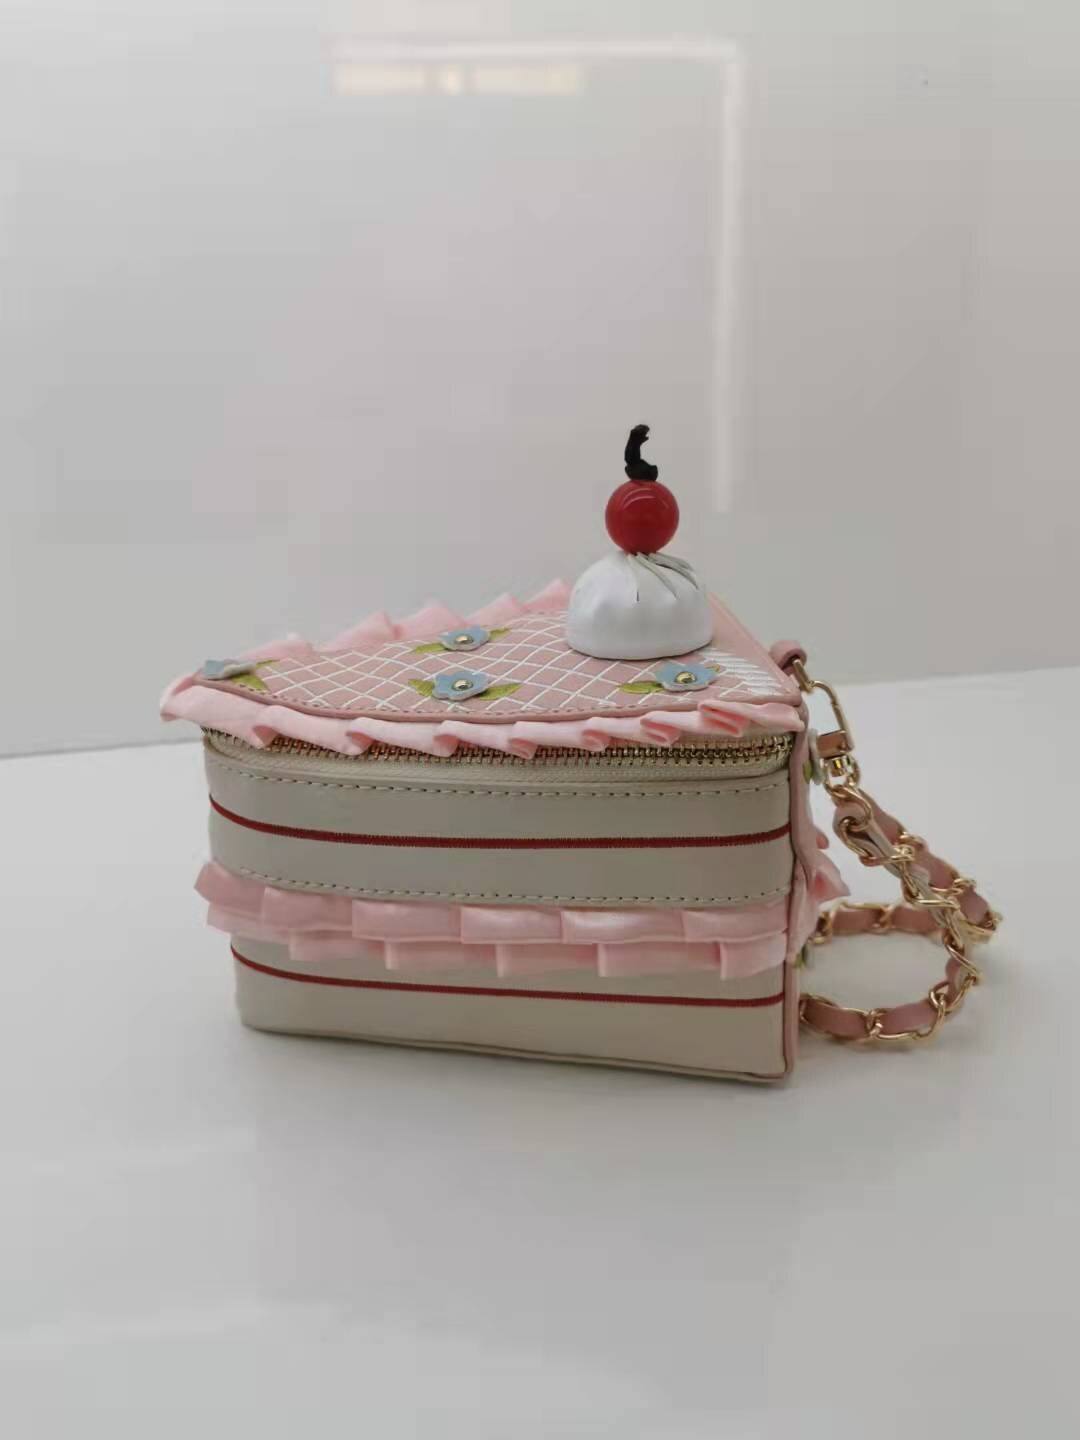 Christmas gift new creative designer cake shape girl handbag